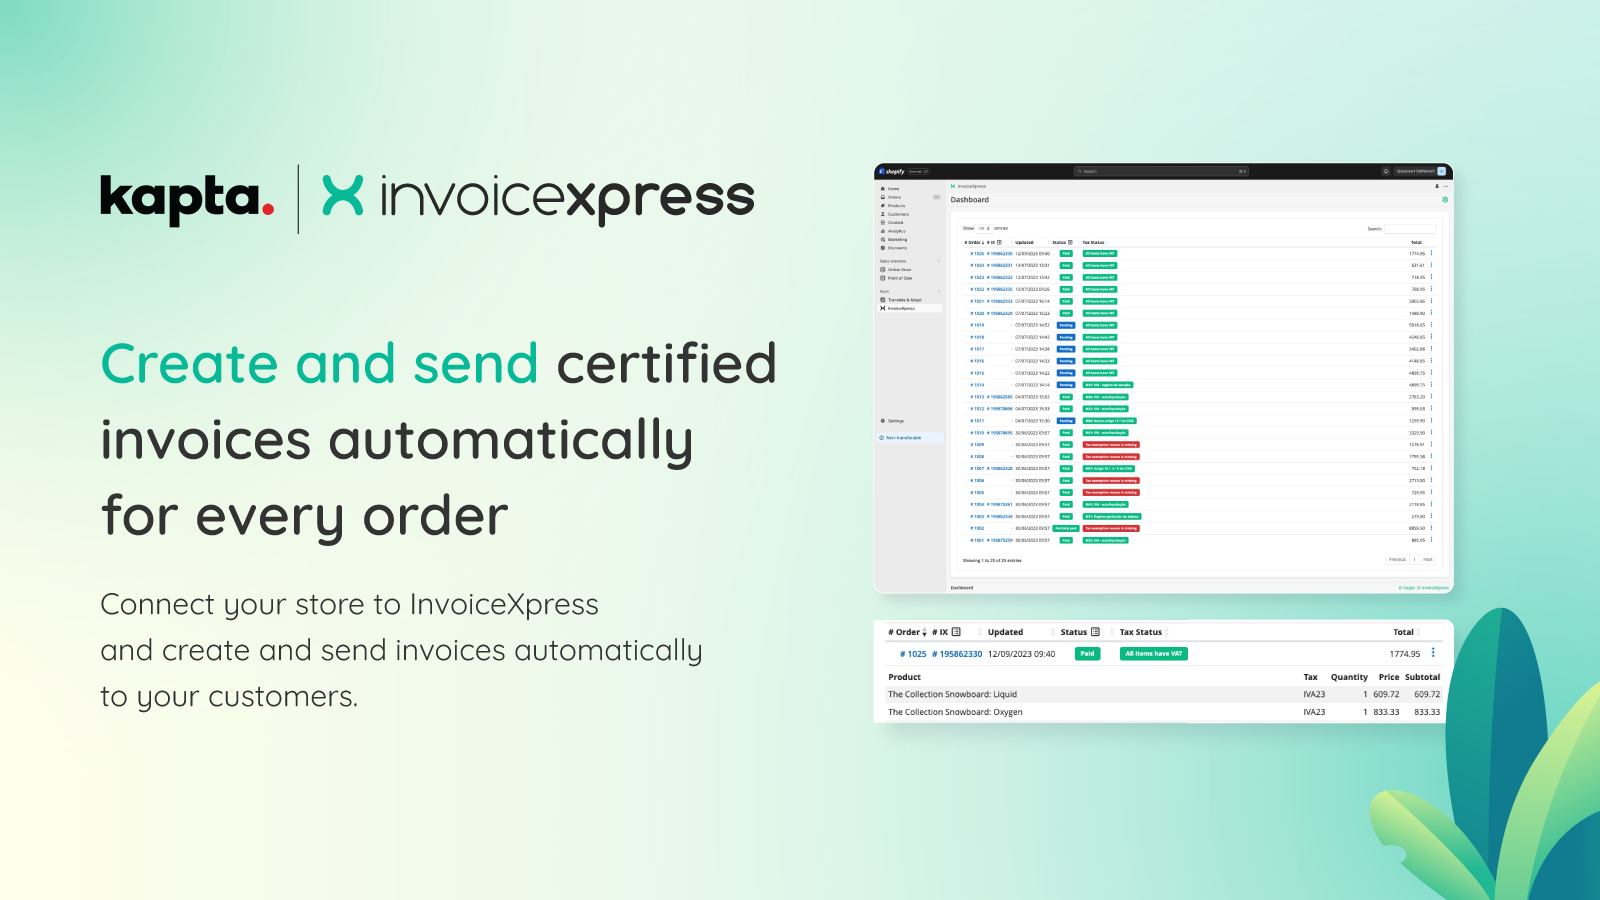 invoicexpress maakt en verzendt gecertificeerde facturen